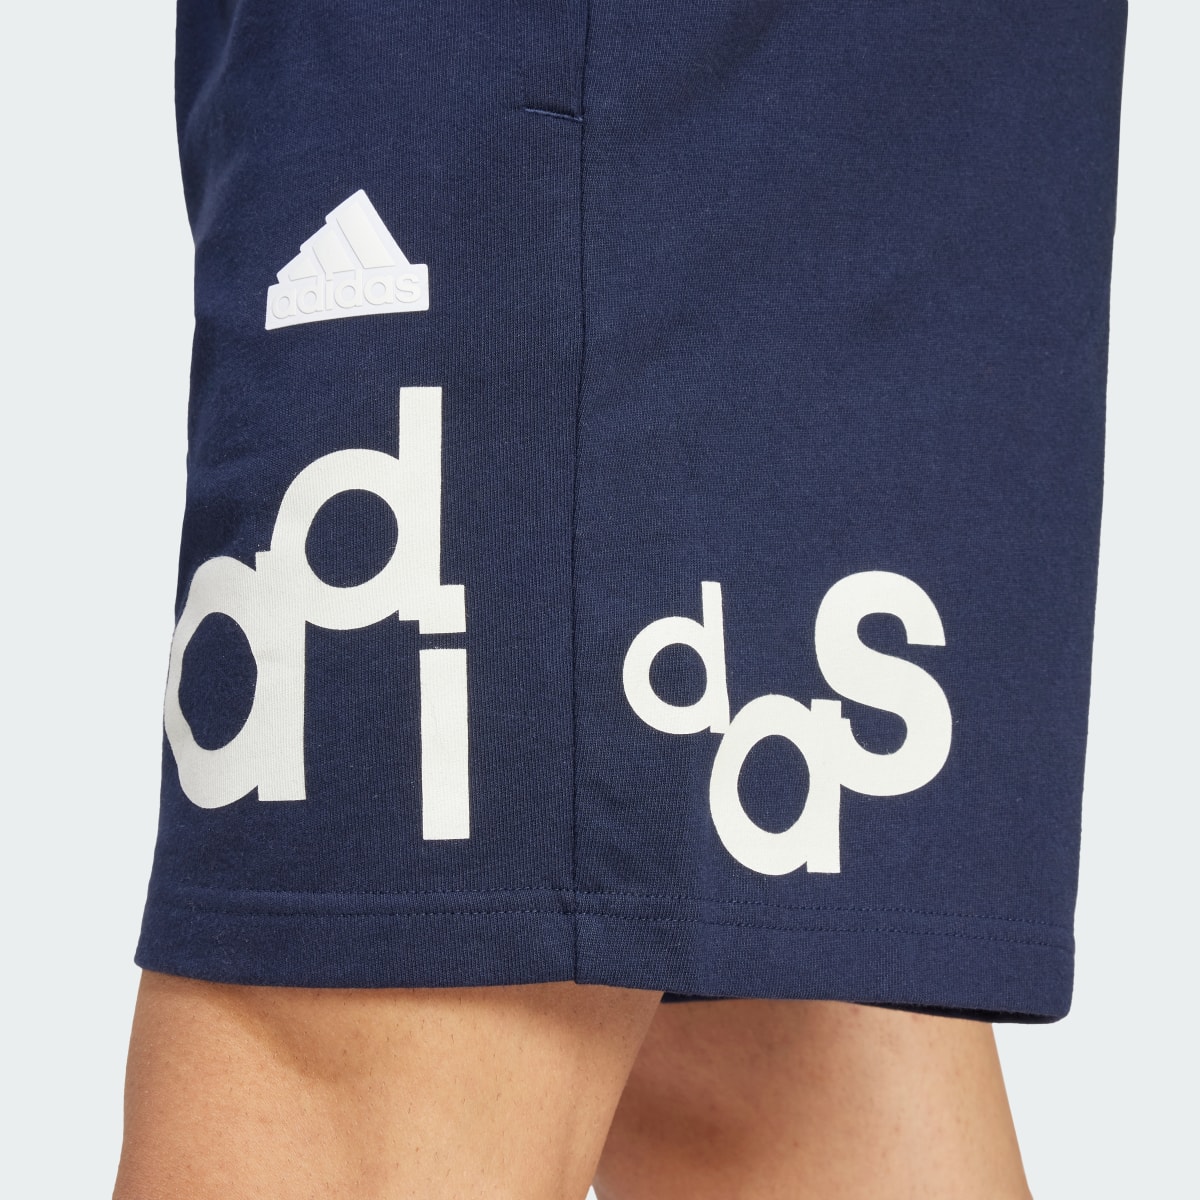 Adidas Graphic Print Shorts. 5